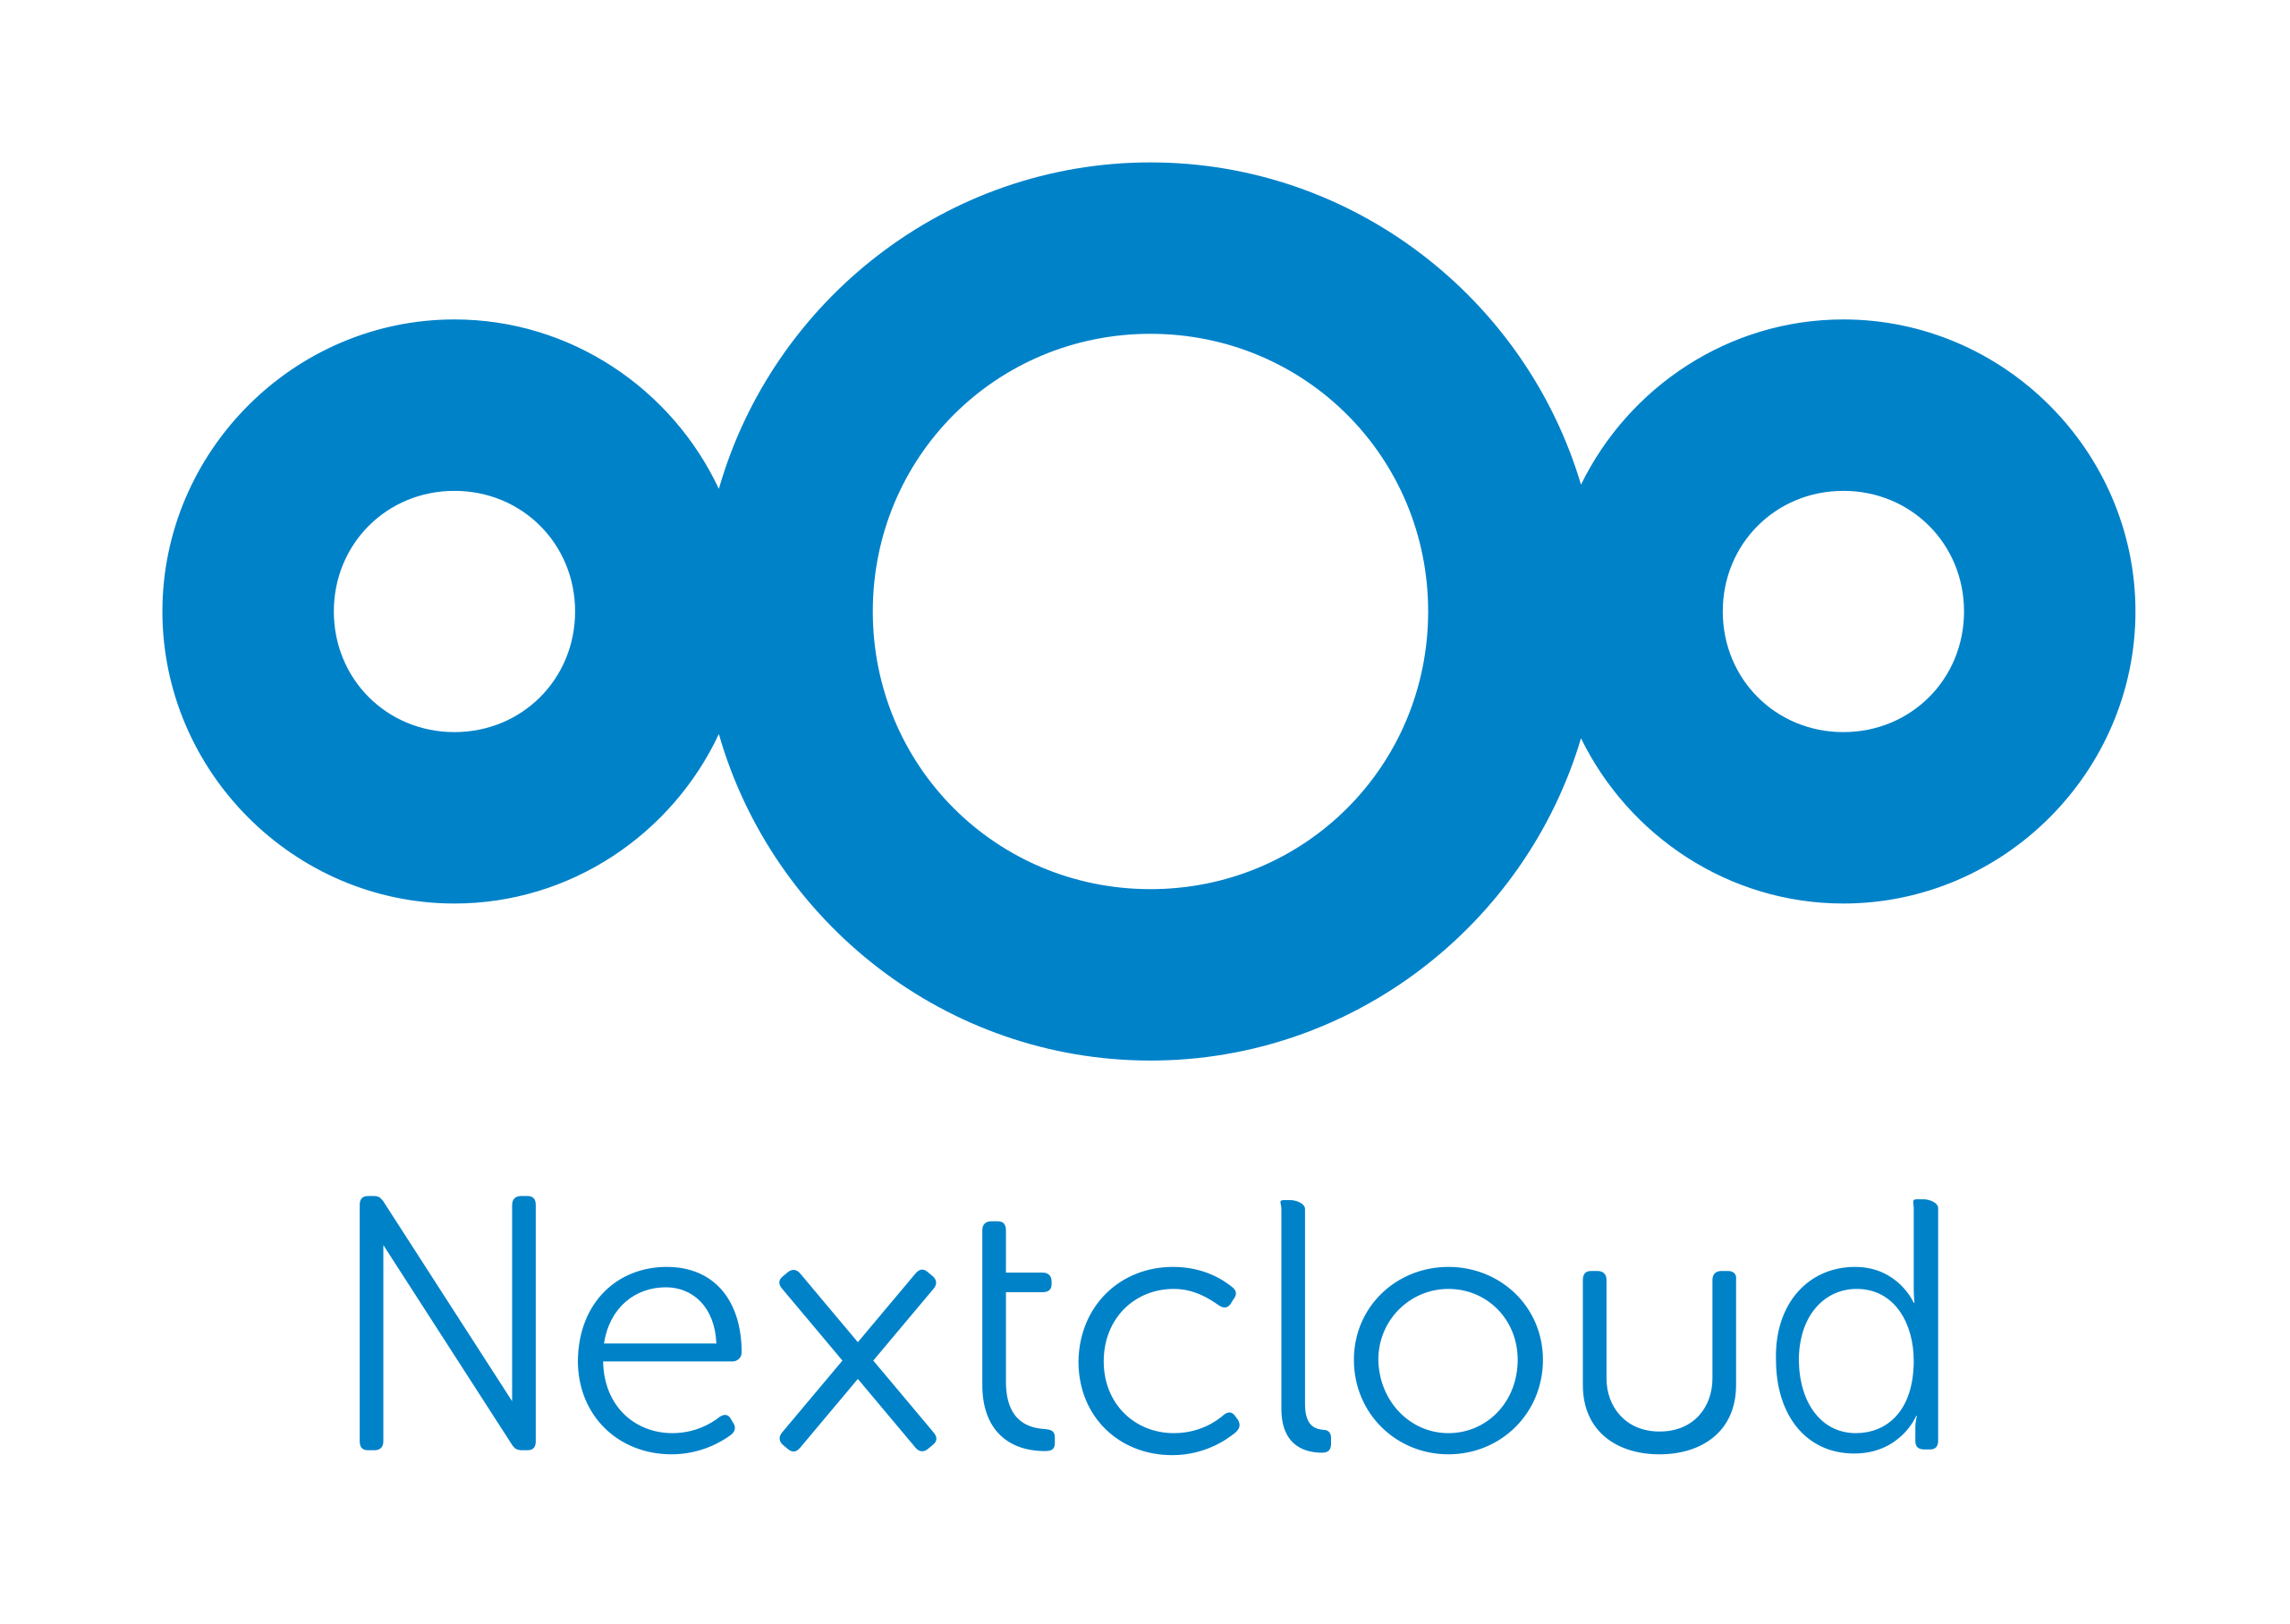 Logo von Nextcloud mit drei überlappenden Kreisen in Blau, die eine Wolke darstellen, darüber der Schriftzug "Nextcloud" in blauer Farbe.